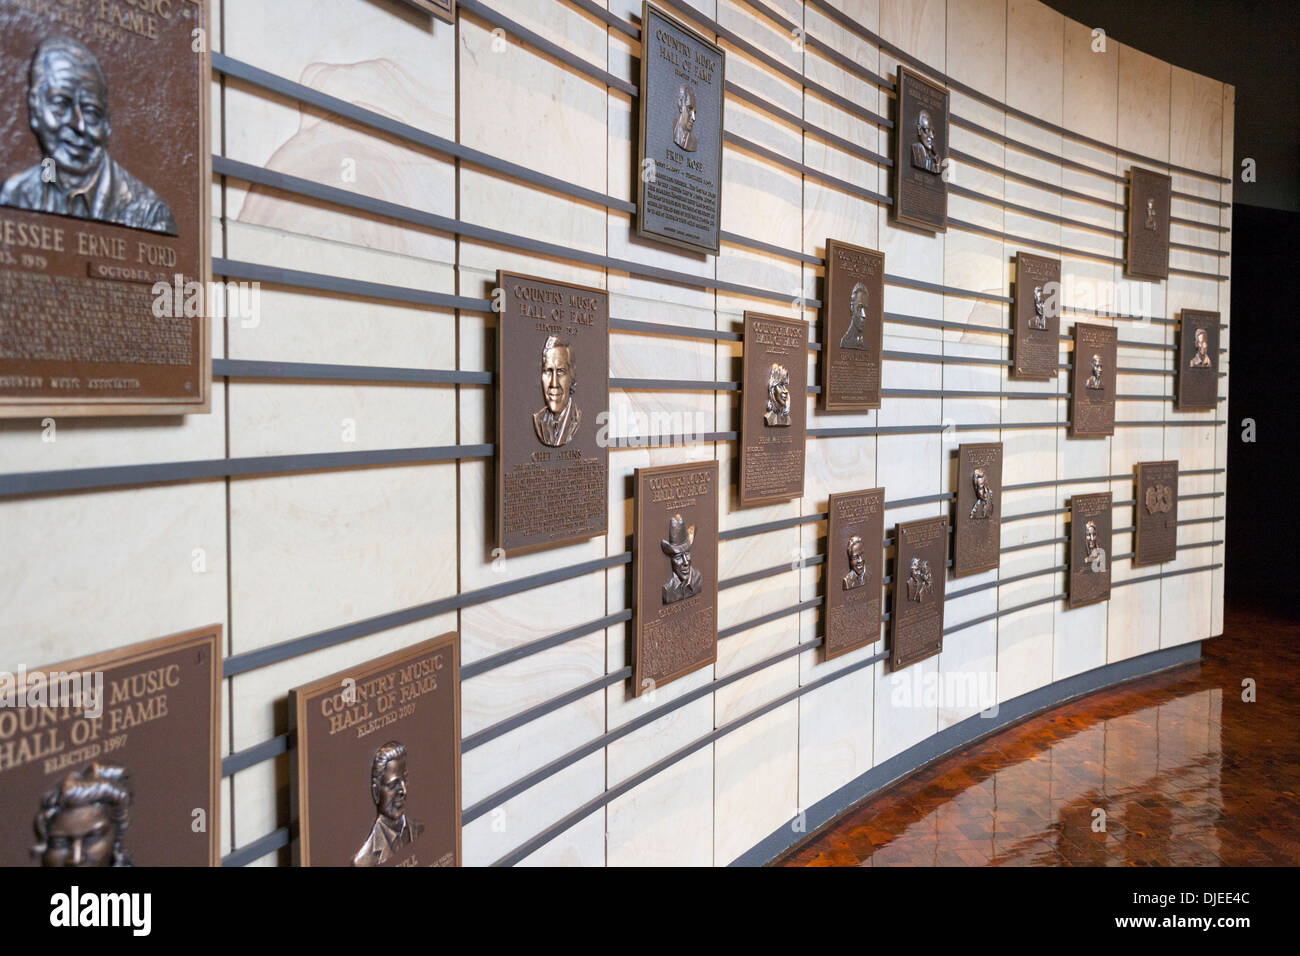 De nombreuses plaques commémoratives reconnaissant stars dans la profession de la musique country au Country Music Hall of Fame à Nashville, TN, USA Banque D'Images